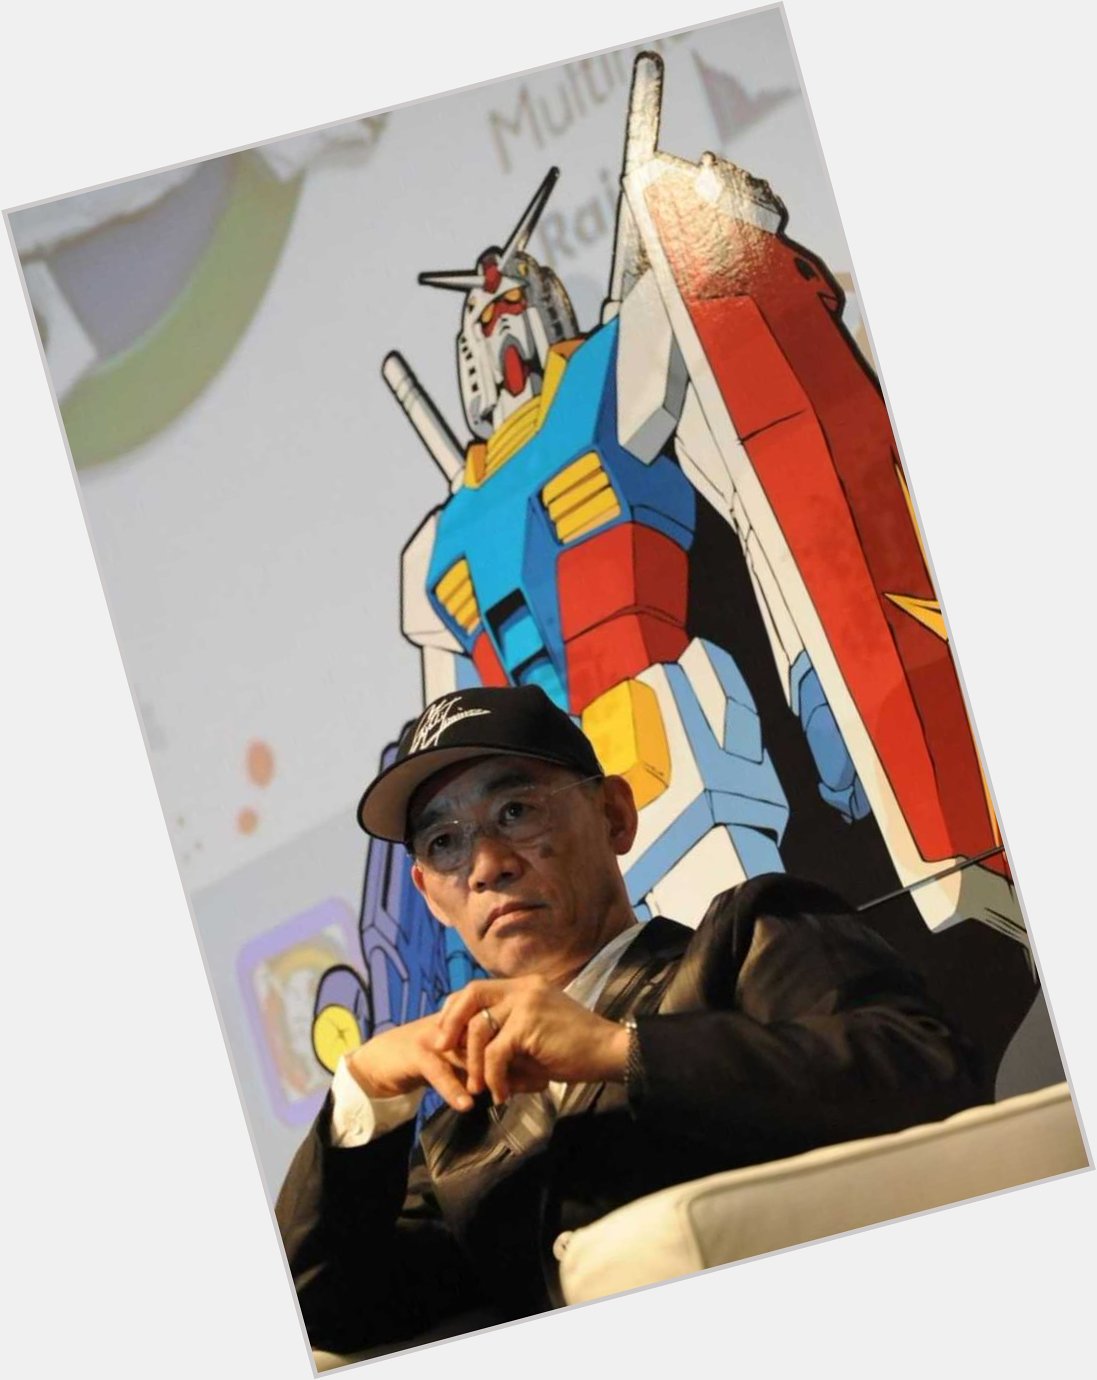 Happy Birthday to Yoshiyuki Tomino, the creator of Mobile Suit Gundam! 